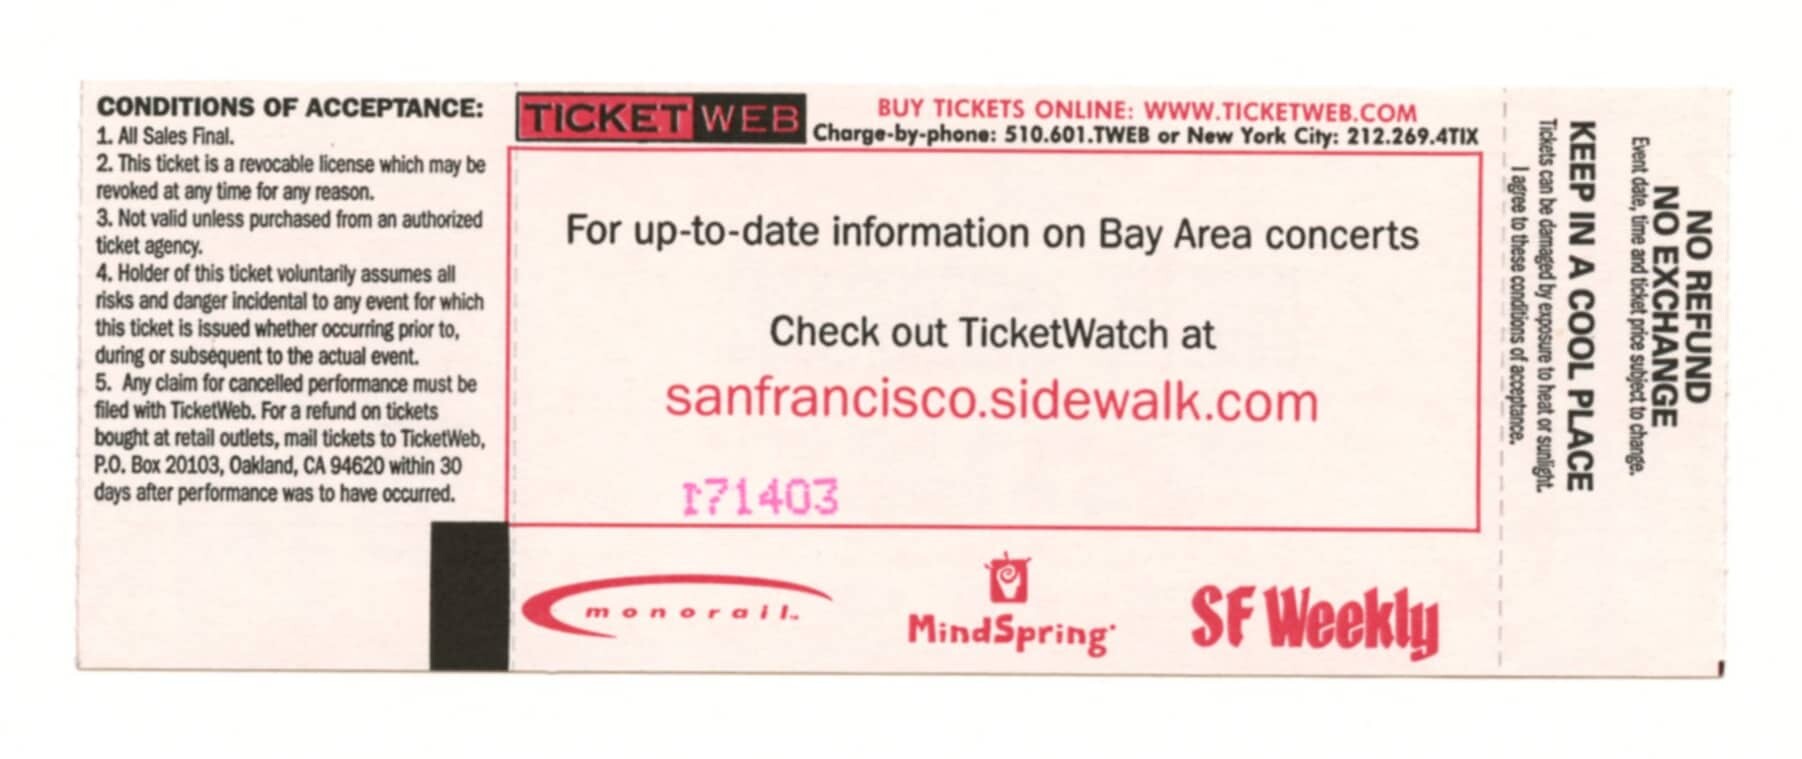 Digital Underground Vintage Ticket Stub 1998 May 25 The Usual San Jose